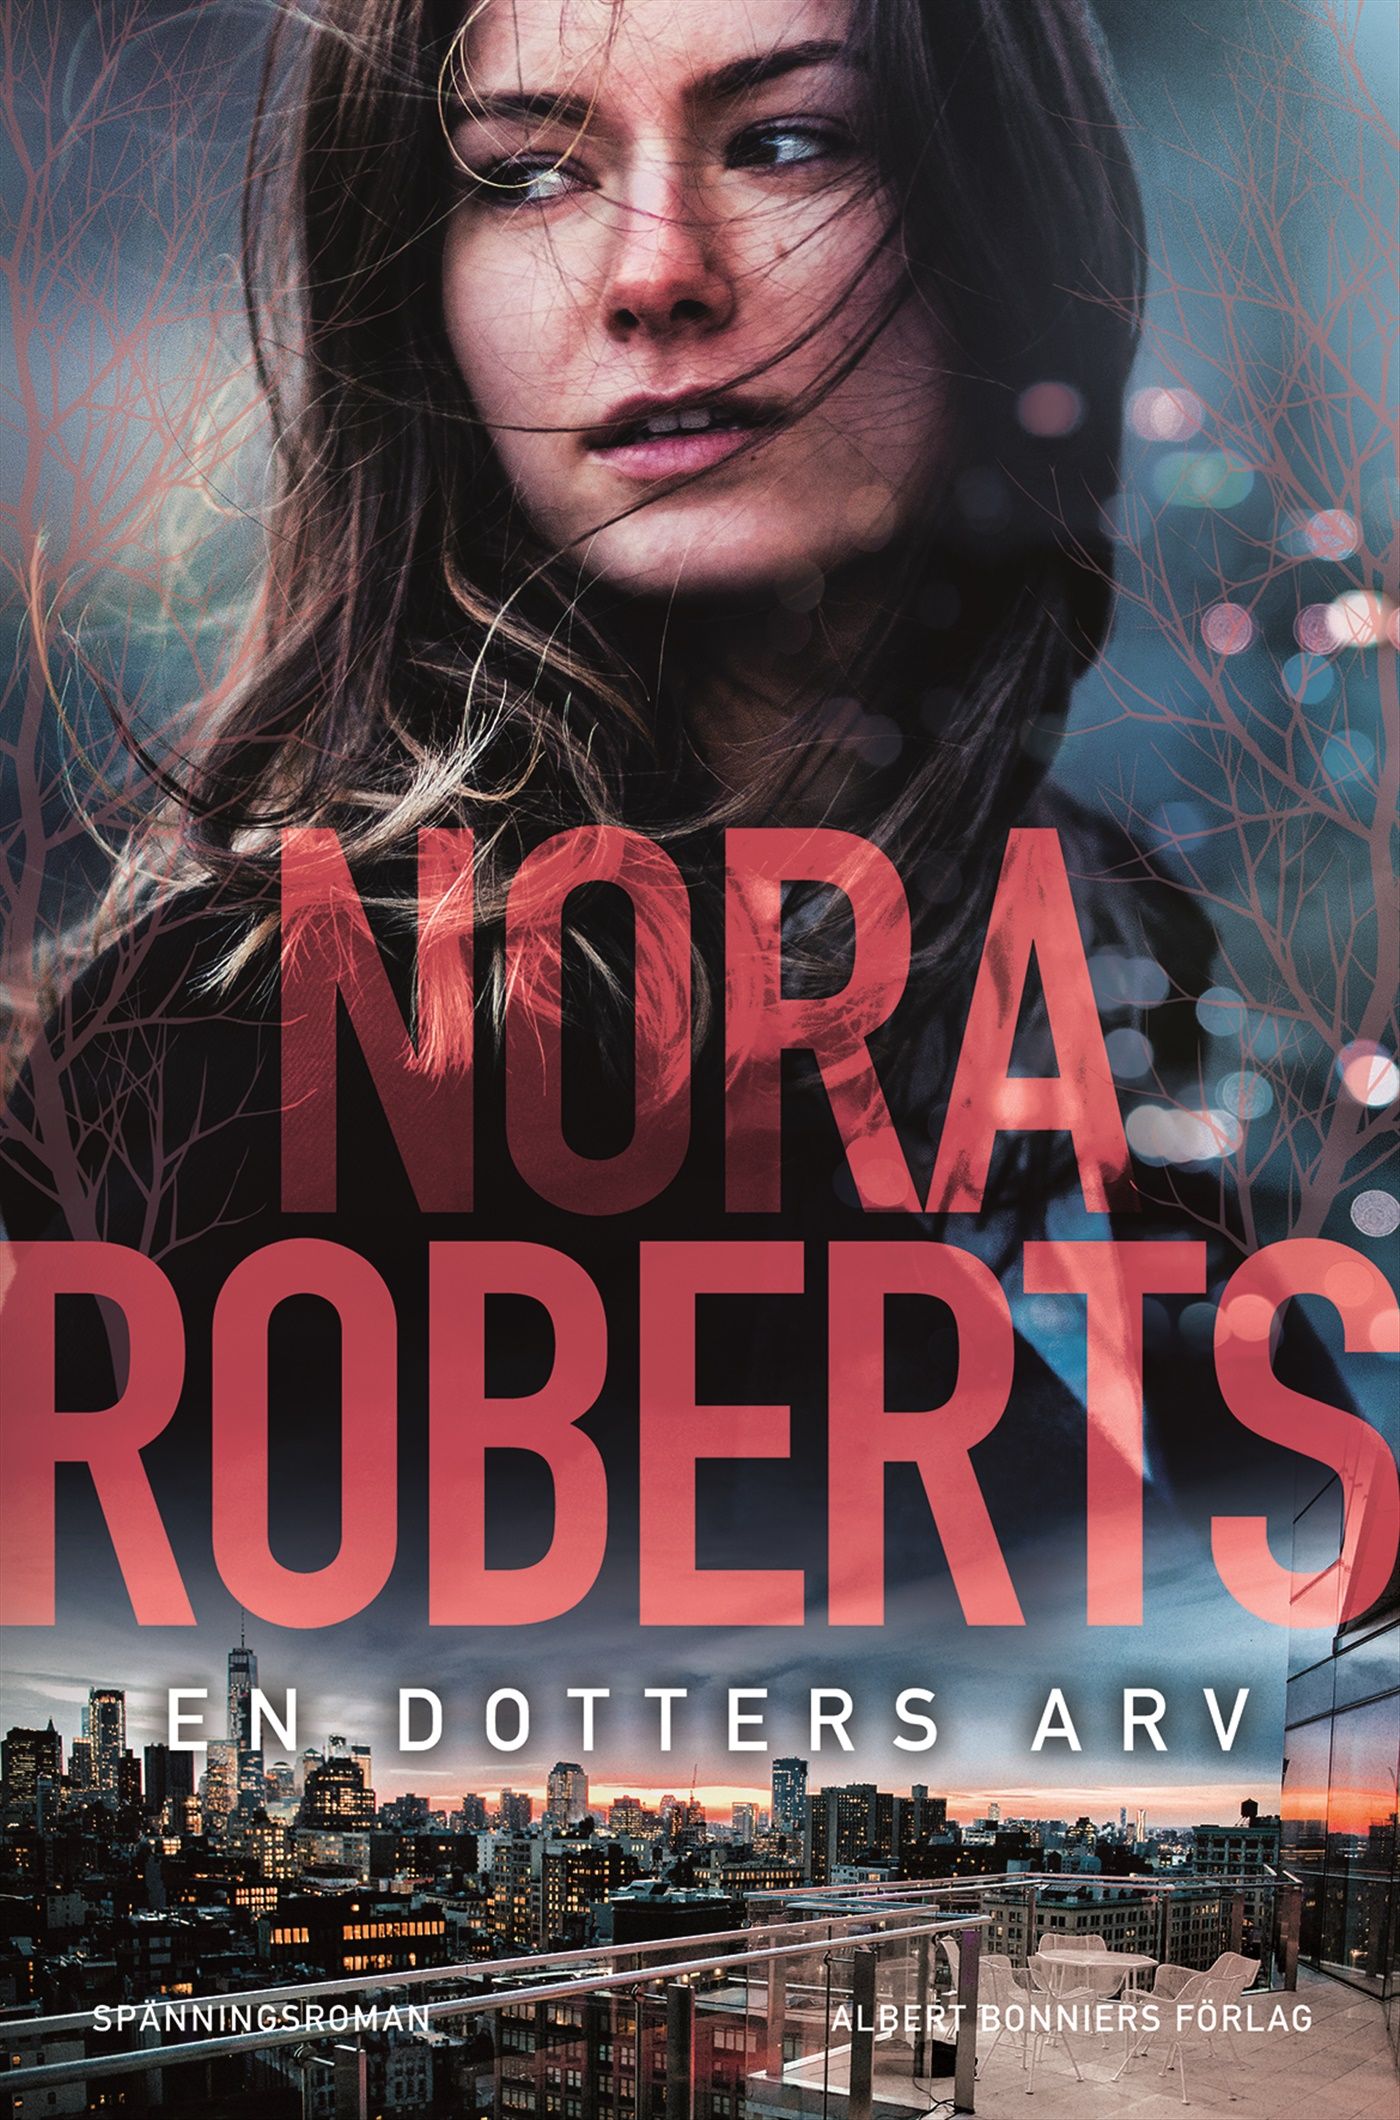 En dotters arv, e-bok av Nora Roberts